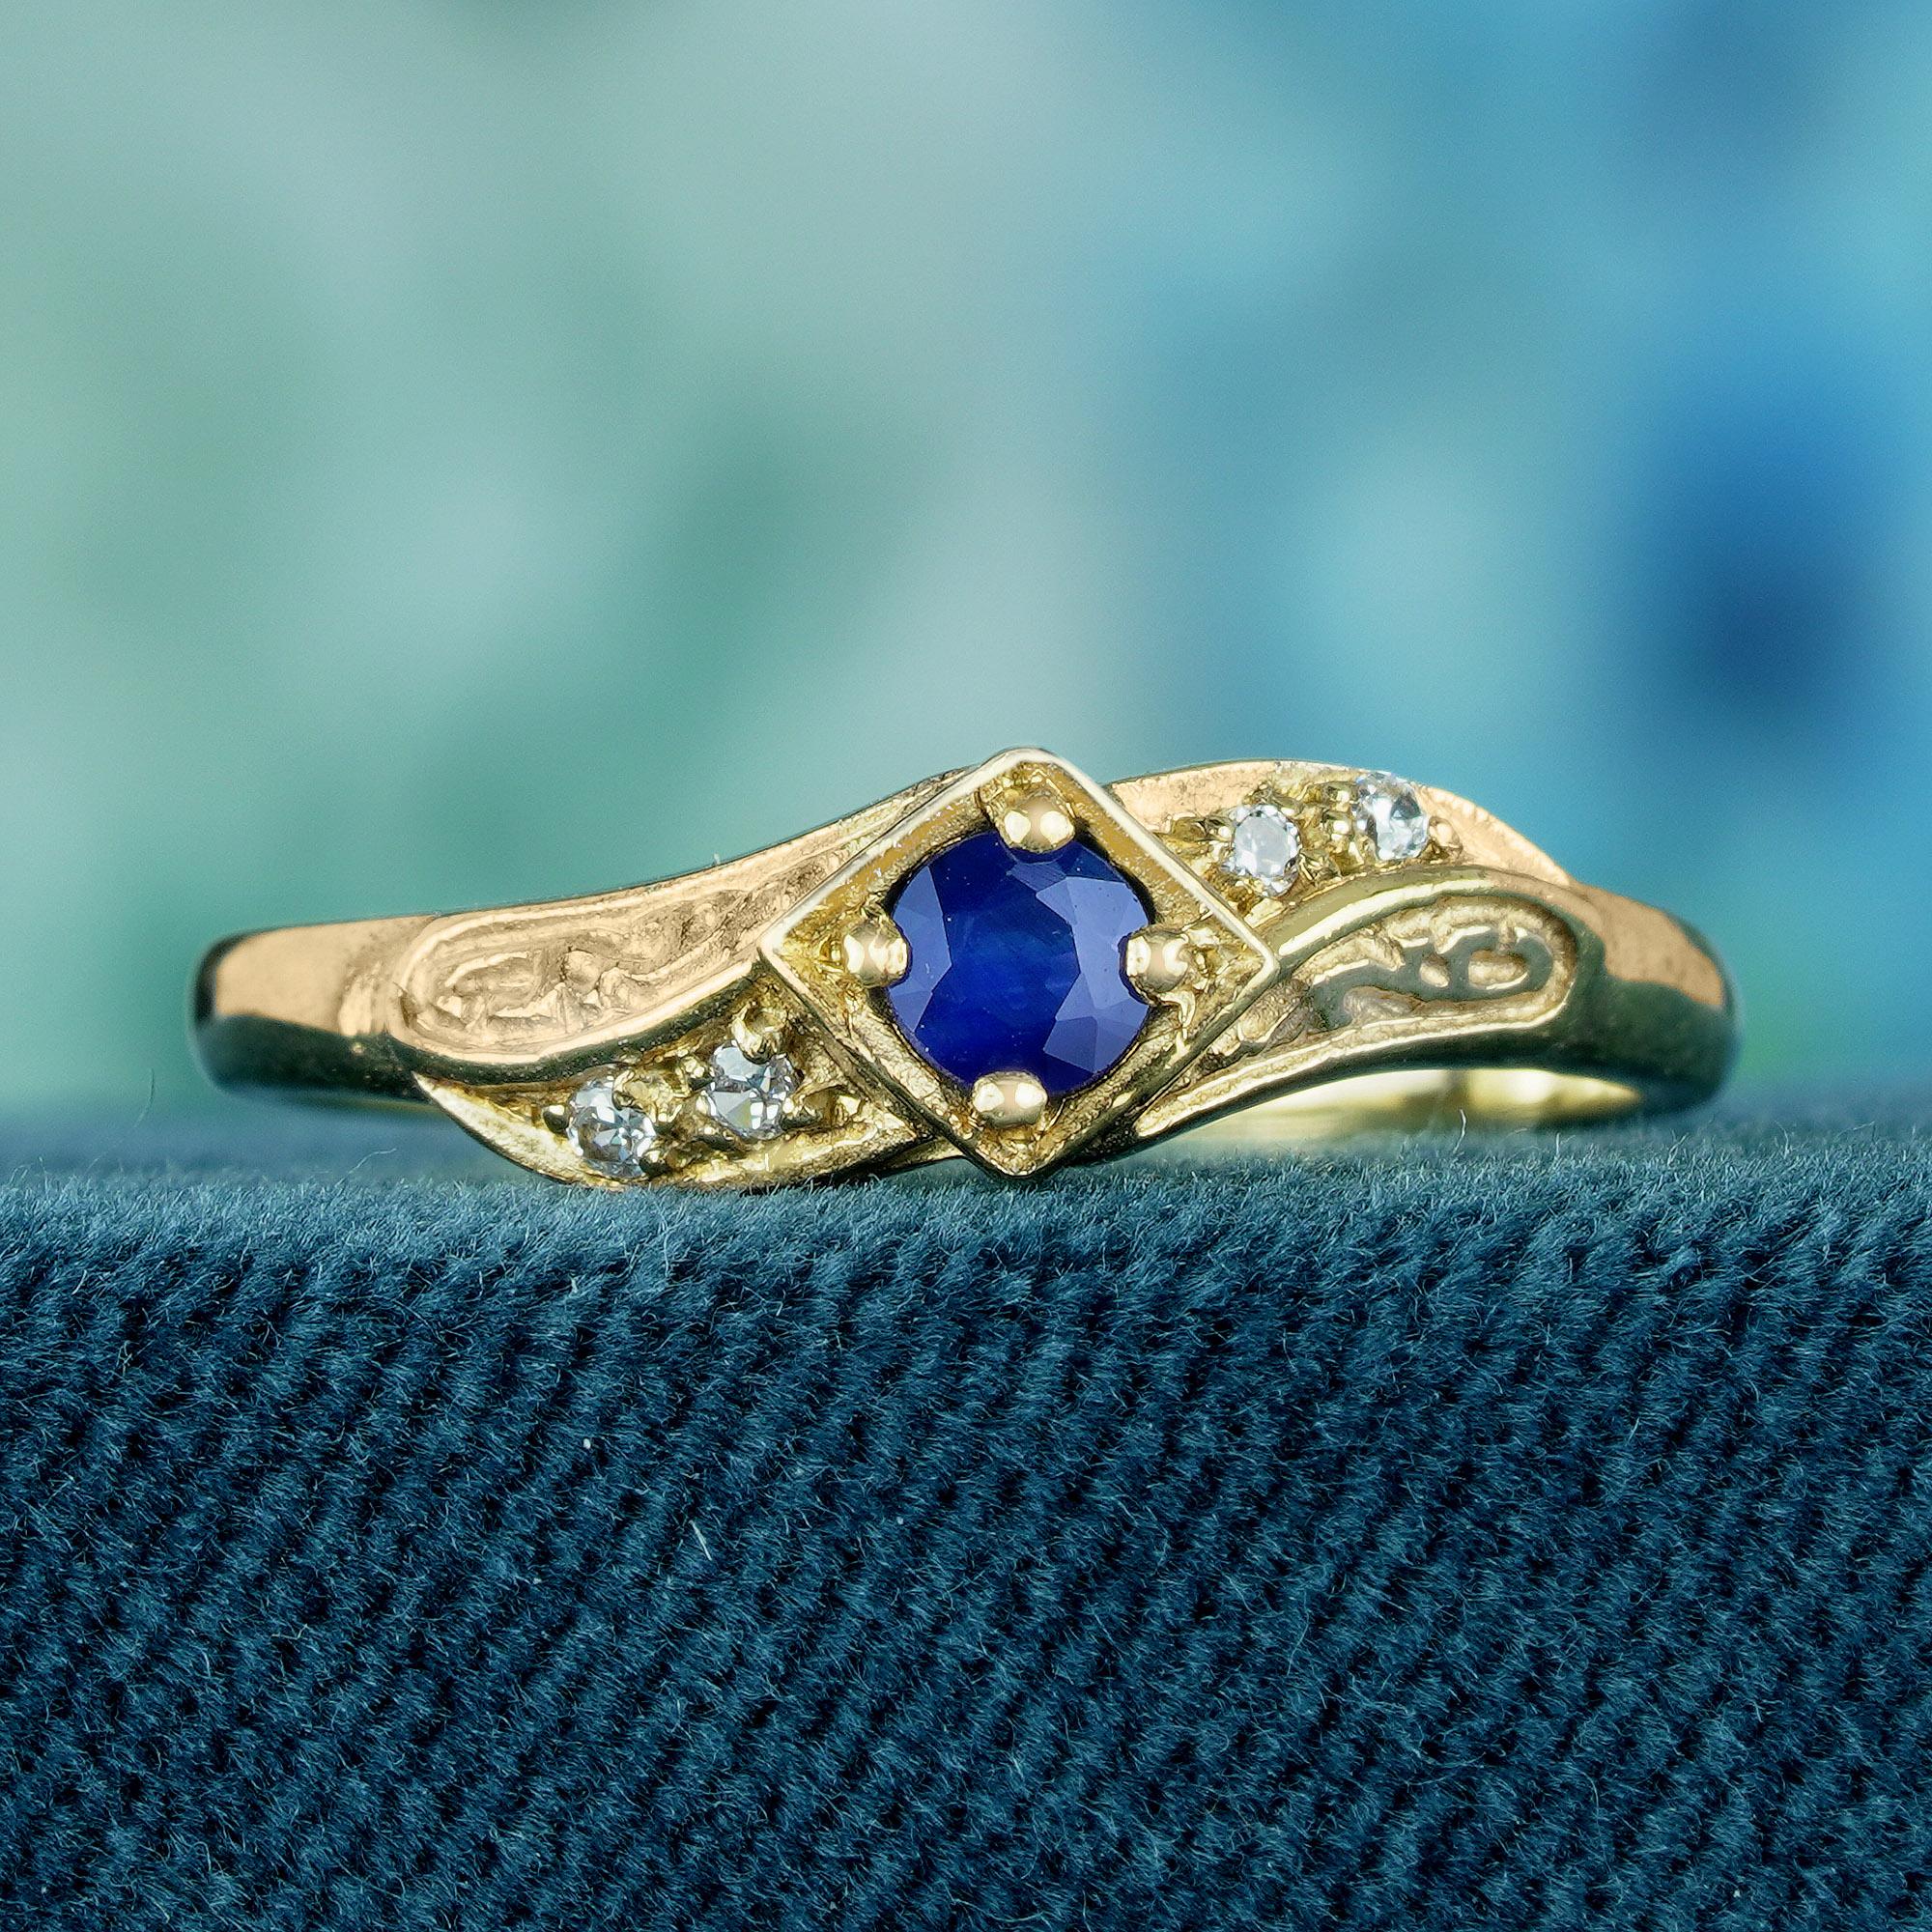 Lassen Sie sich in eine Ära der ewigen Anziehungskraft entführen mit unserem fesselnden Ring im Vintage-Stil, der sorgfältig in einem glänzenden Gelbgoldband gefertigt ist. Sein Herzstück ist ein bezaubernder runder blauer Saphir, der in einer